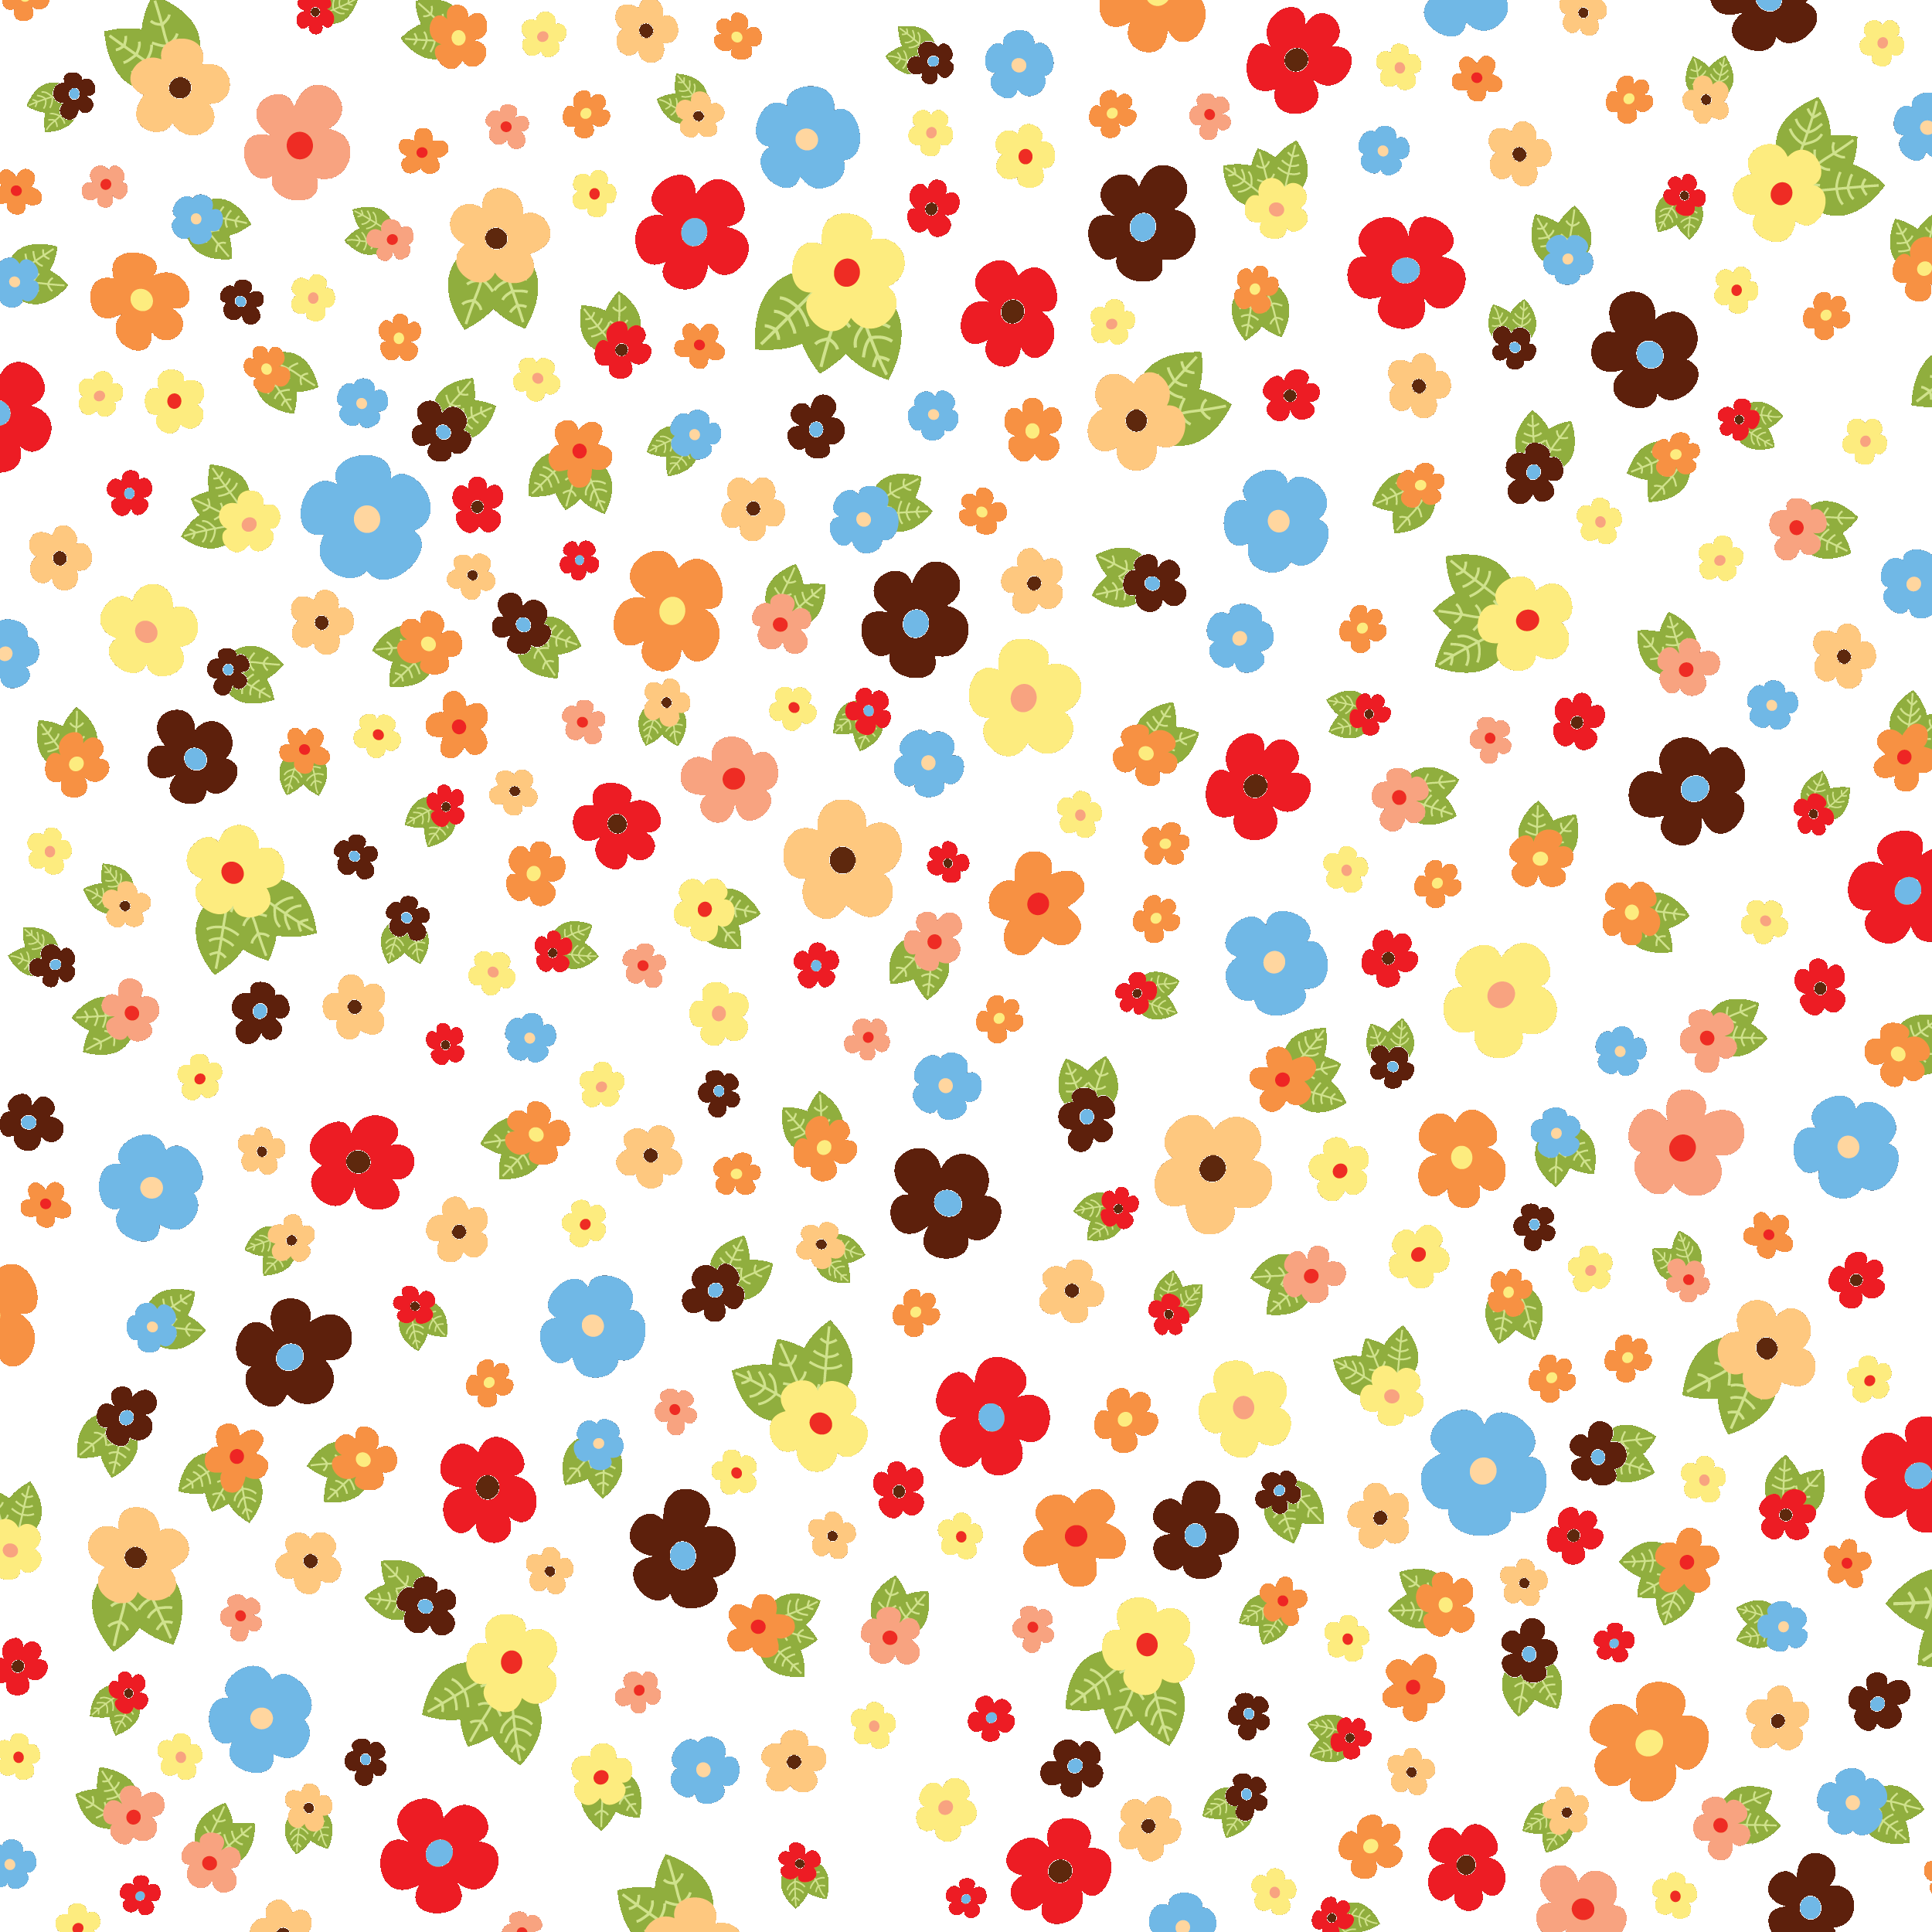 壁紙 背景イラスト 花の模様 柄 パターン 無料のフリー素材集